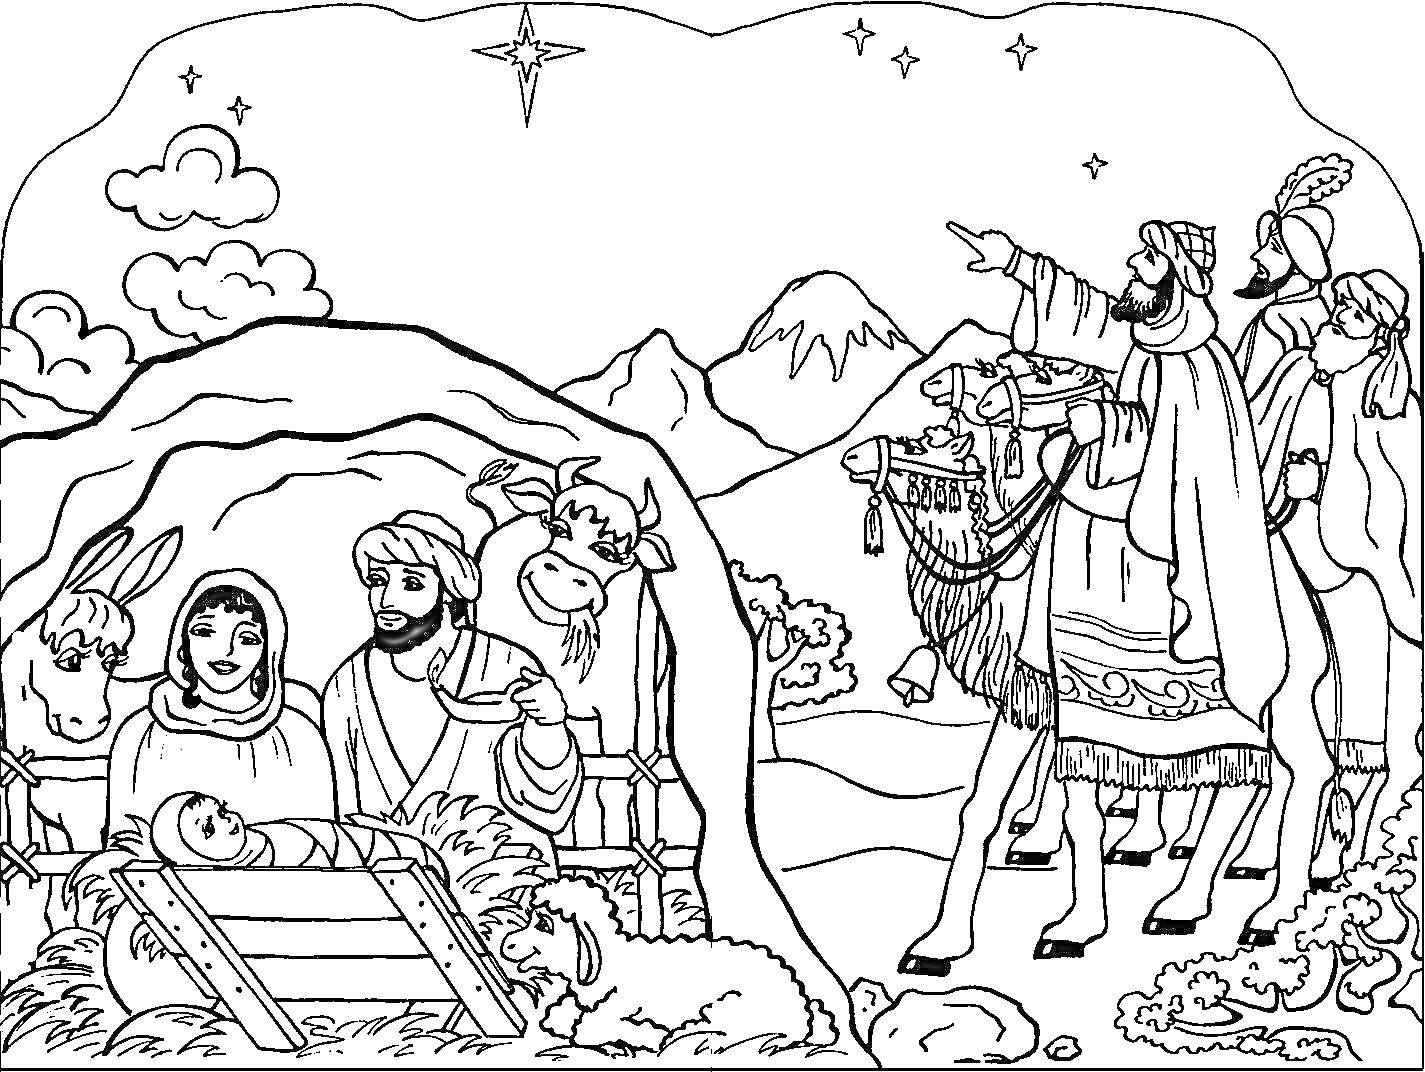 Рождественская сцена с младенцем Иисусом, Марией, Иосифом, волхвами, верблюдом, ослом, овцами и звездой над пещерой